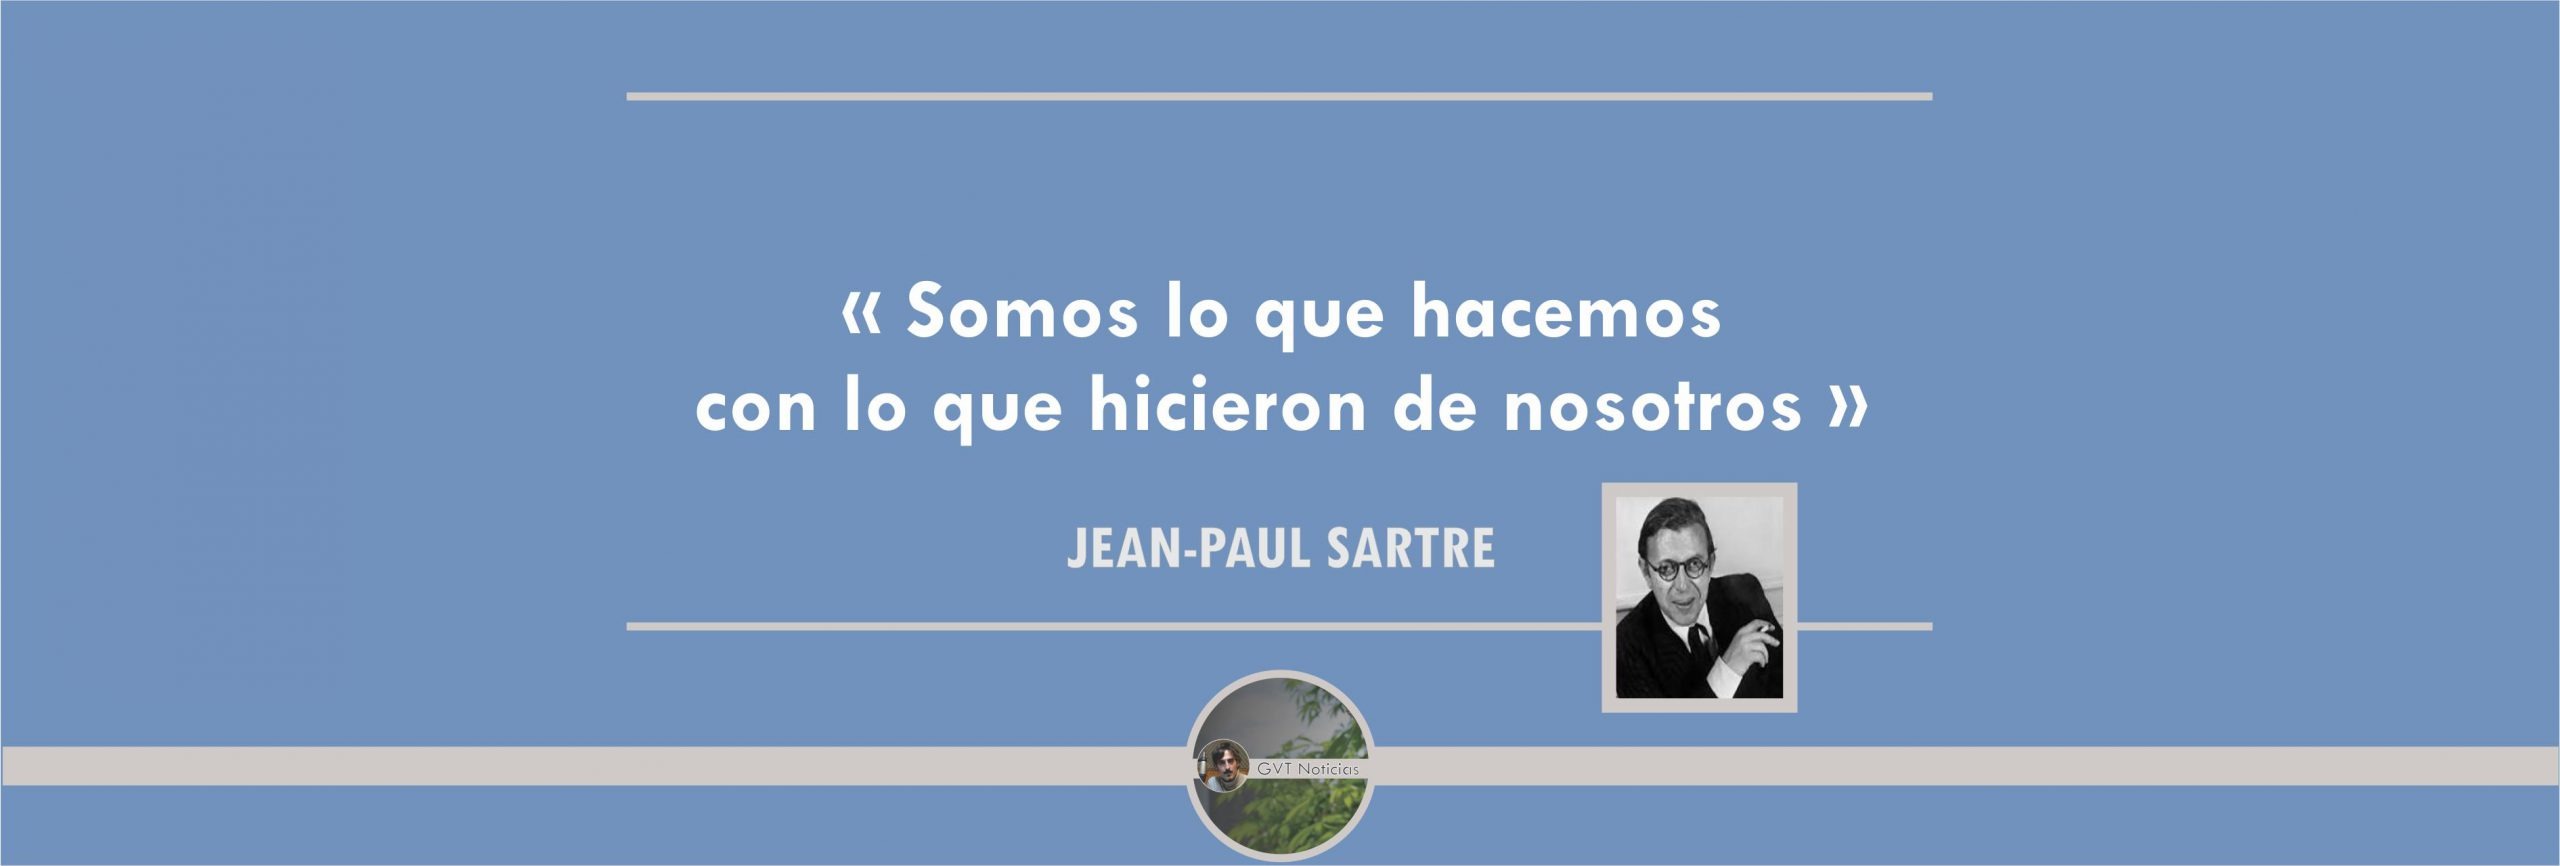 20190218 - Frases con Reflexiones - Sartre - Somos lo que hacemos con lo que hicieron de nosotros1